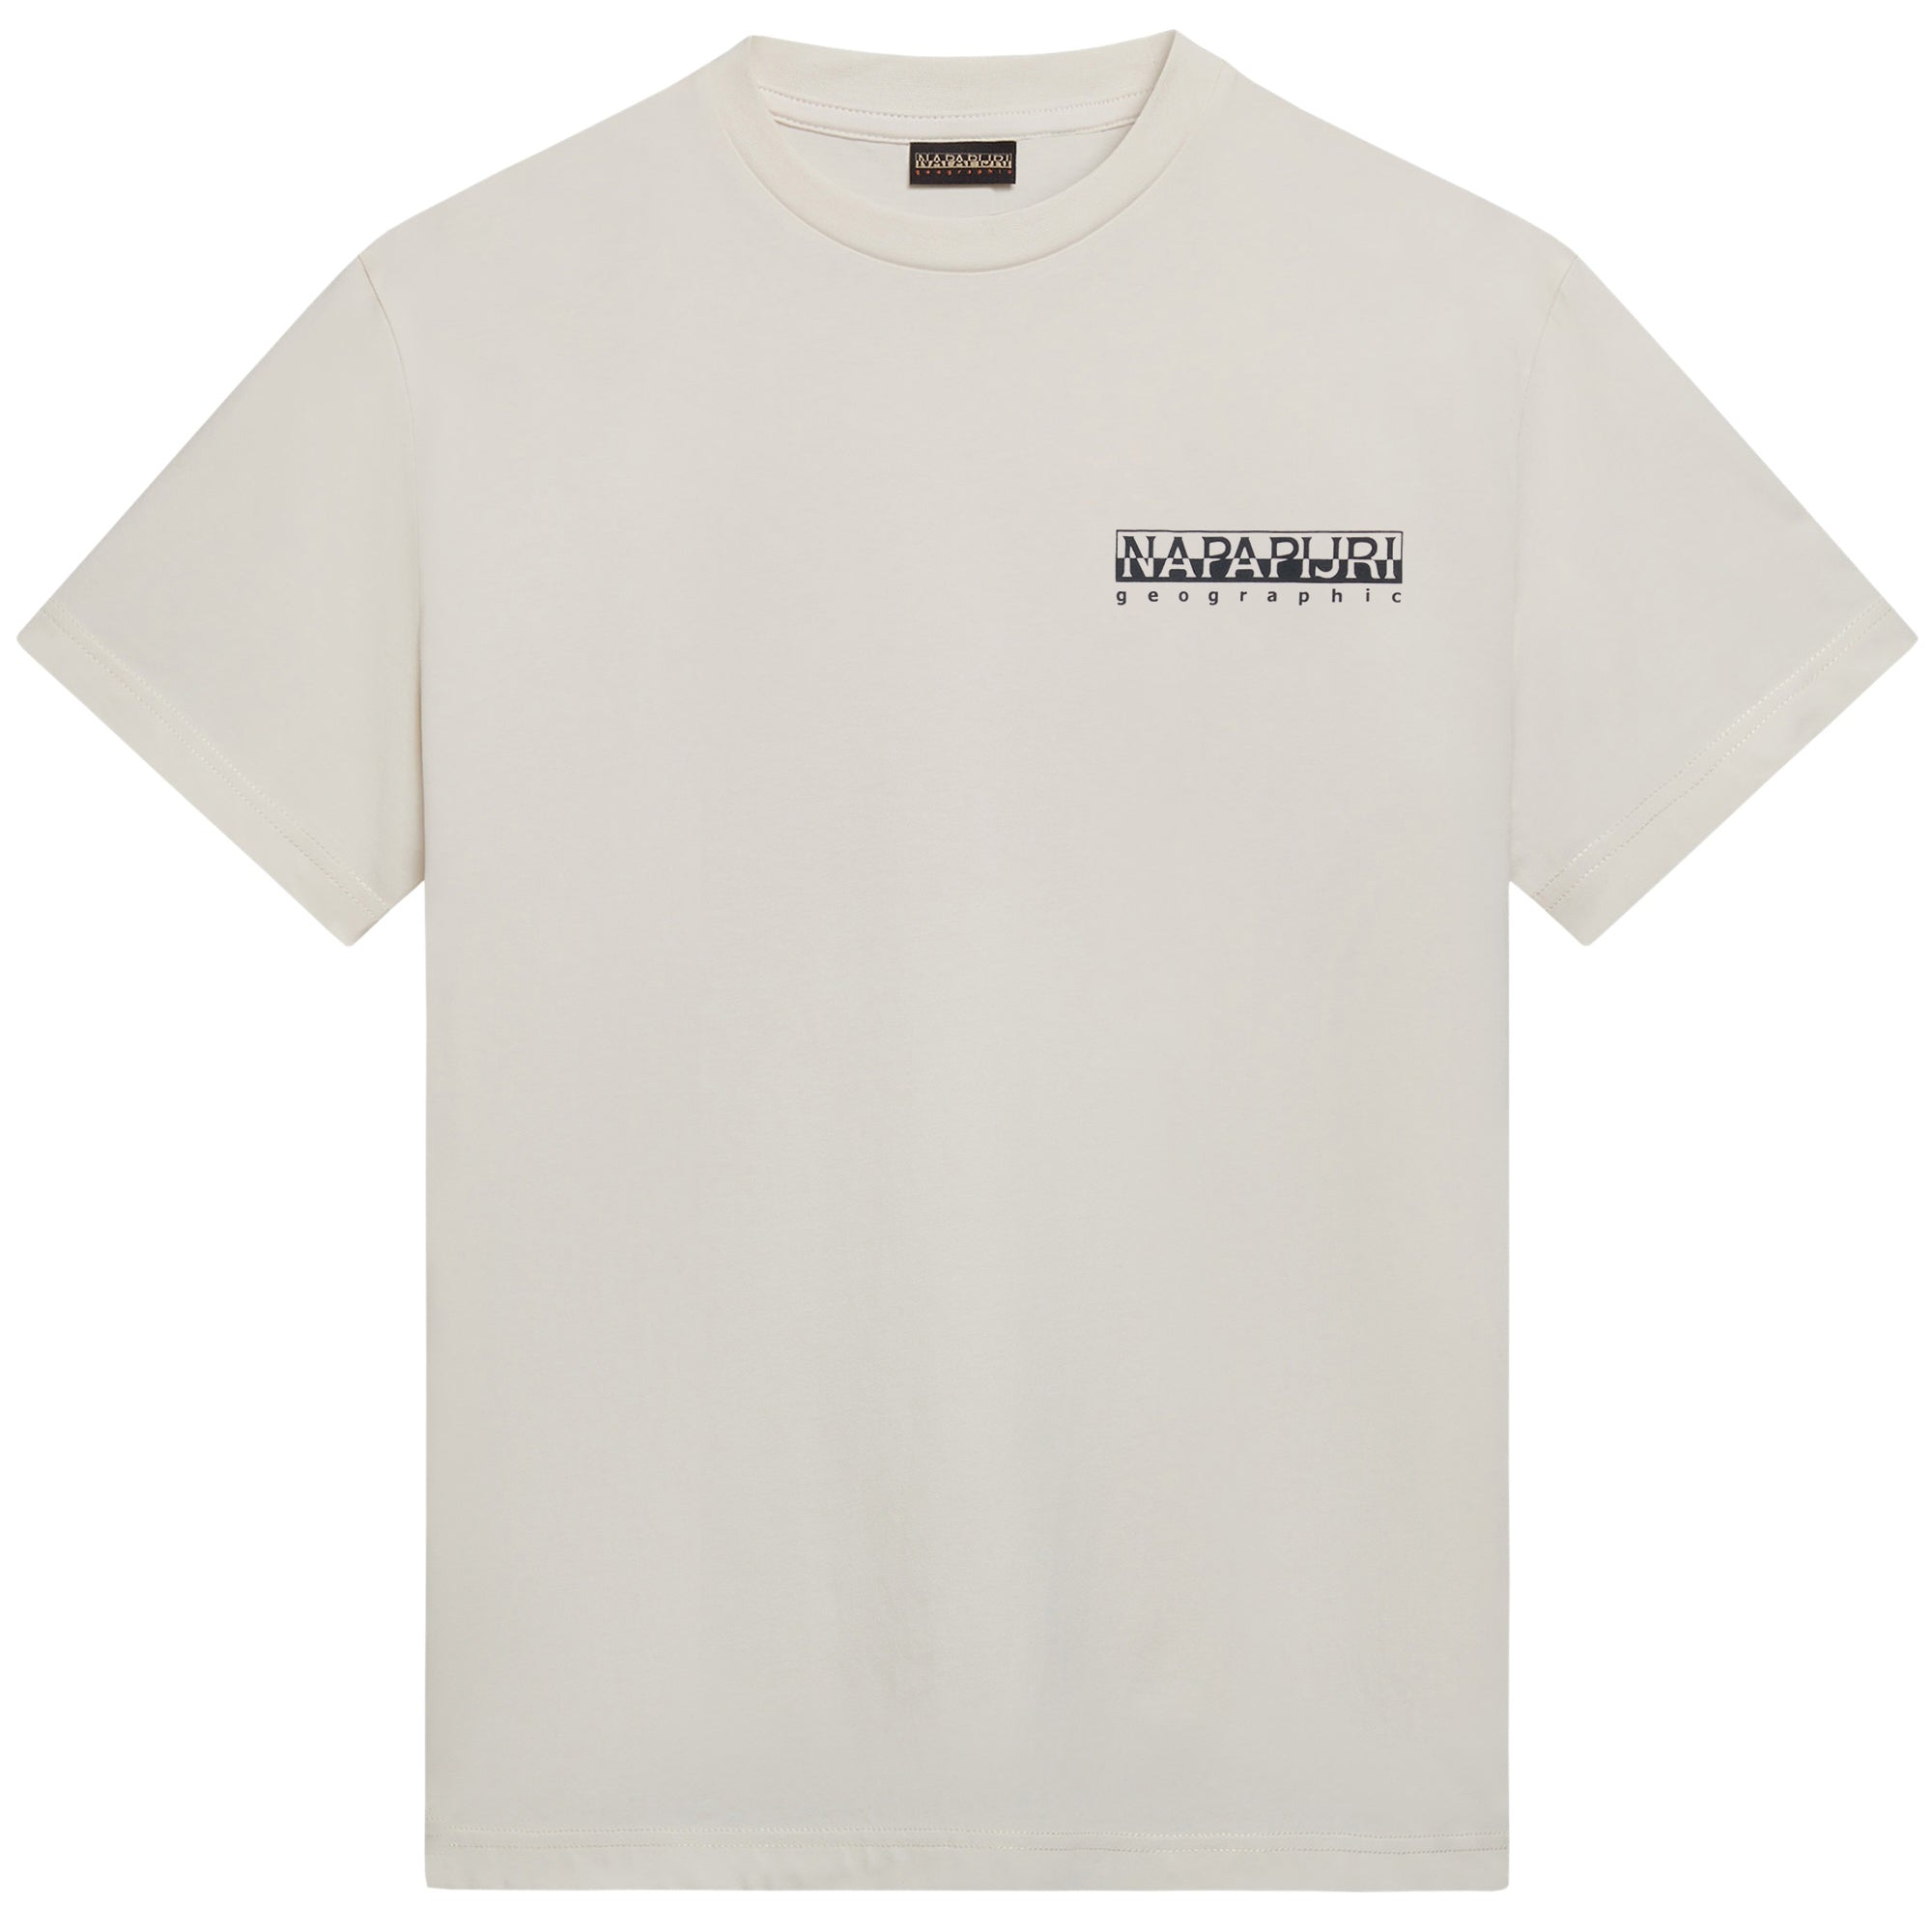 Napapijri S-Martre T-Shirt - Whisper White